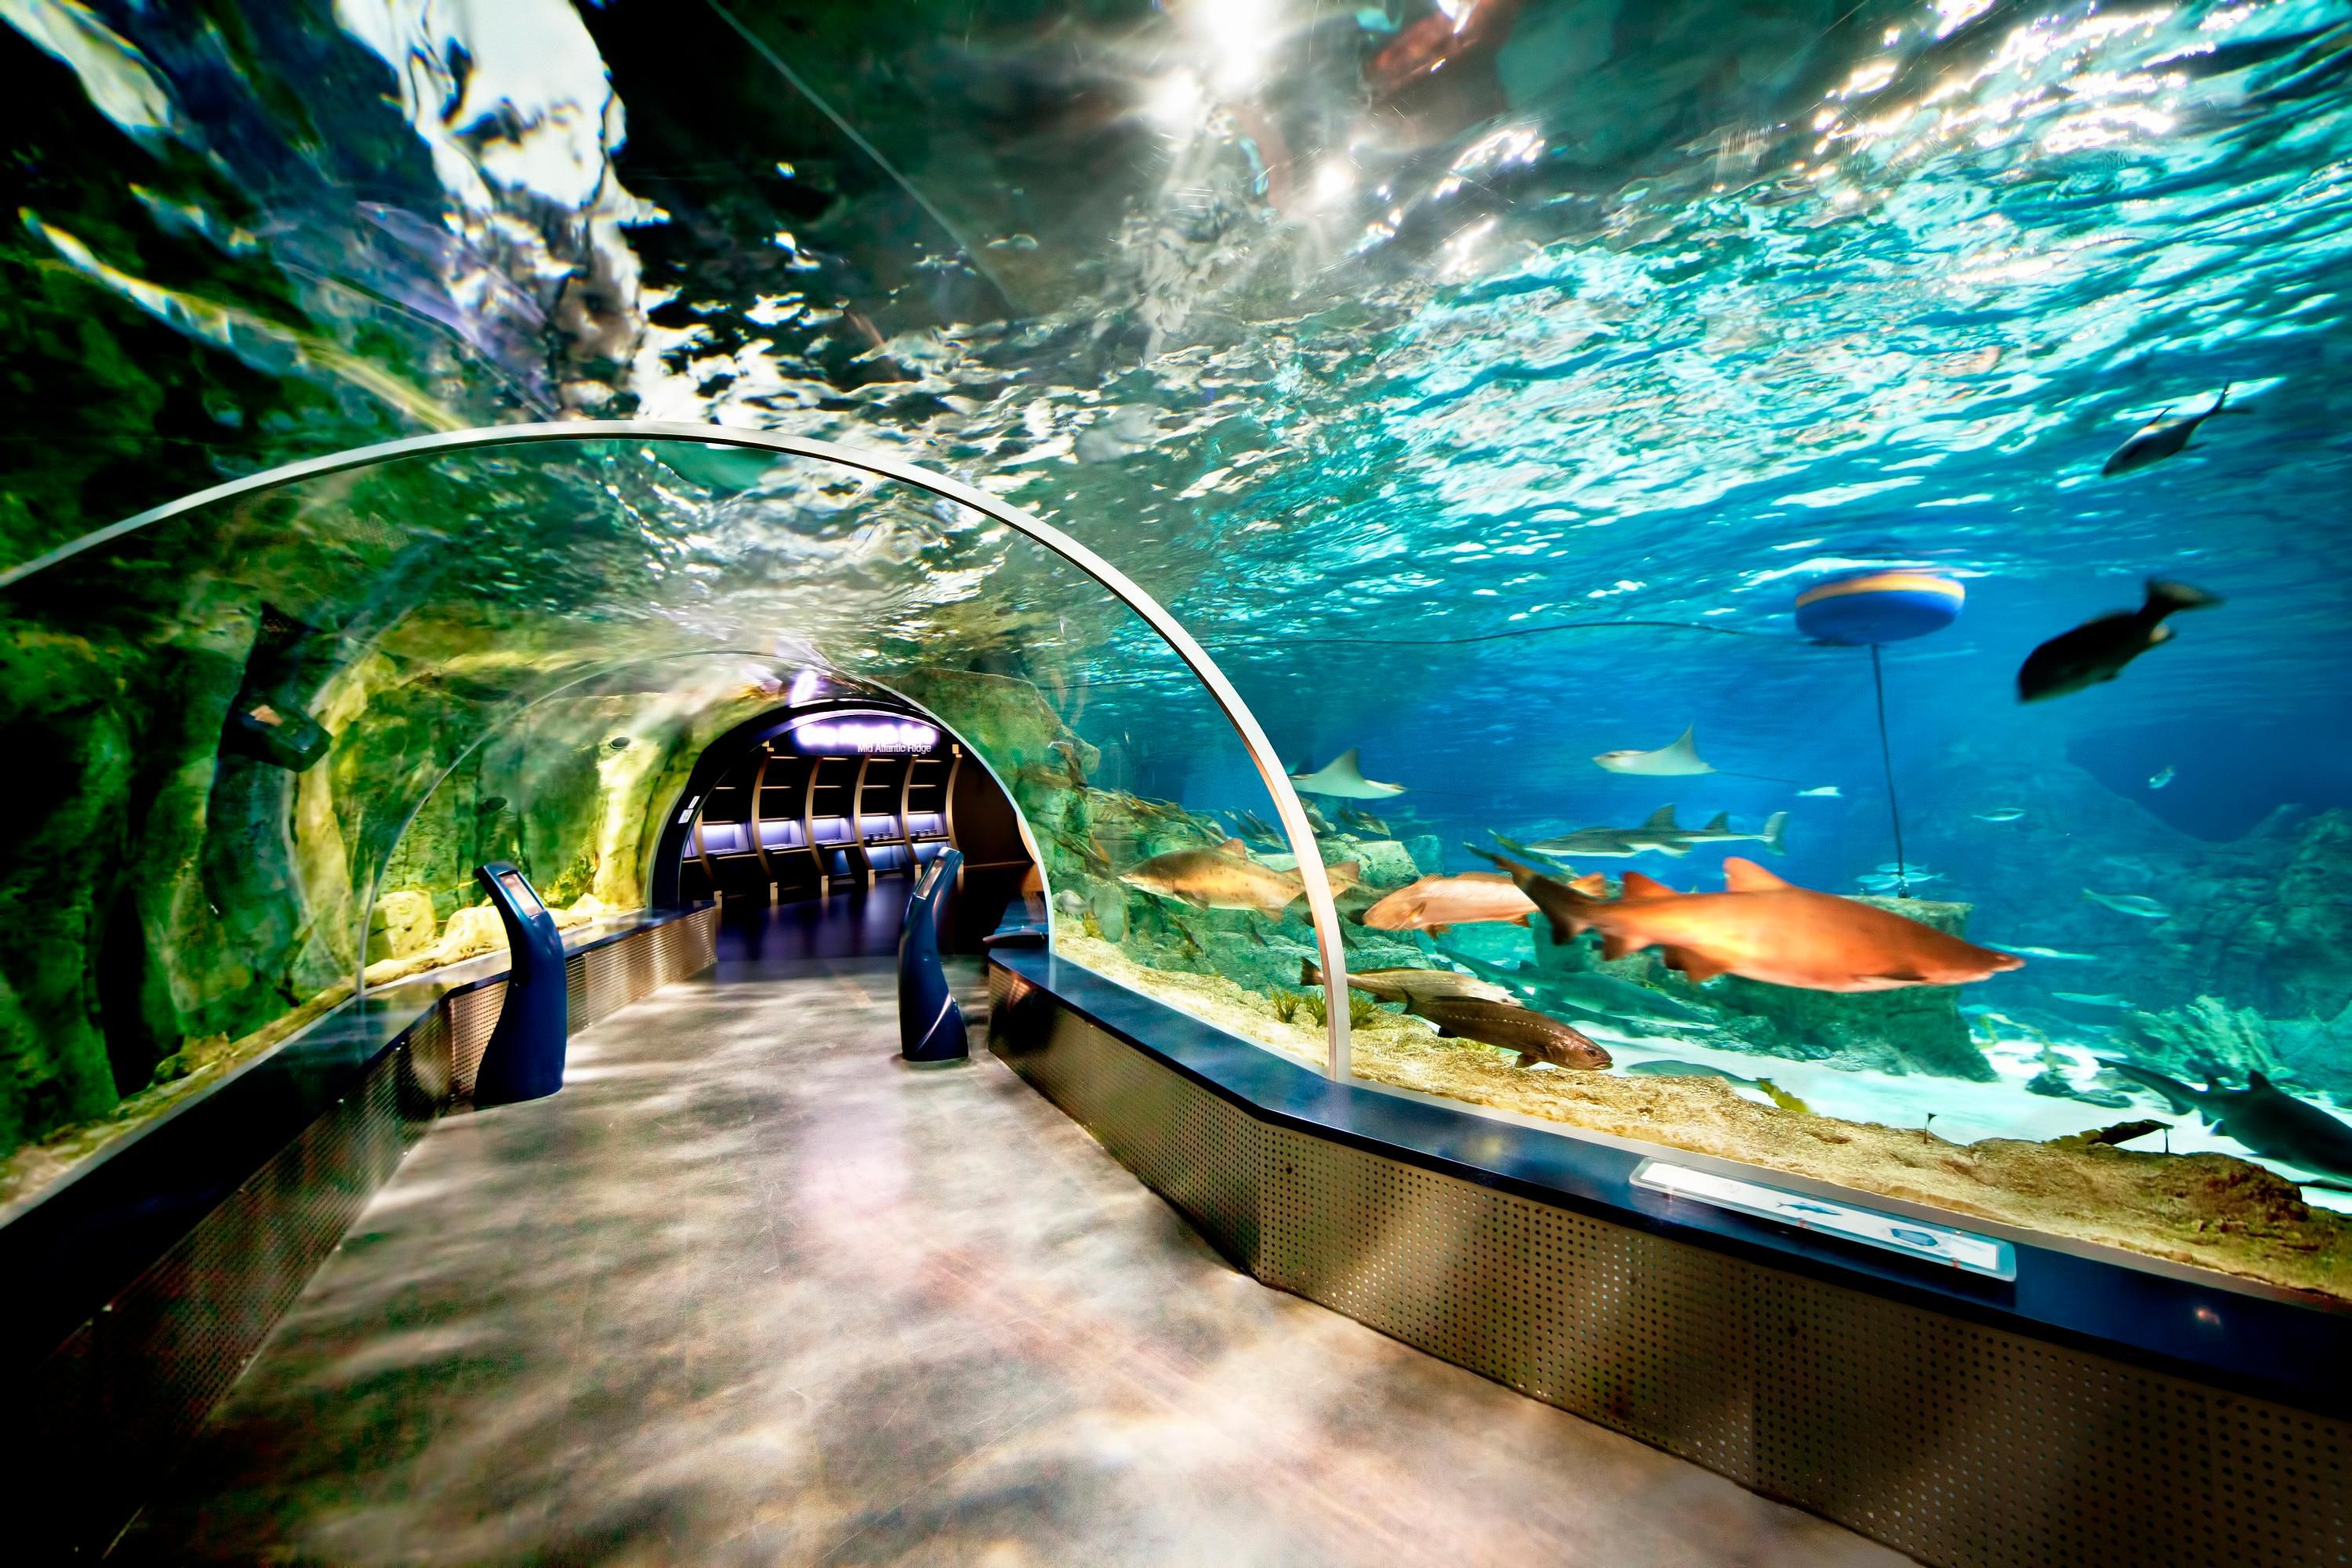 Istanbul Aquarium